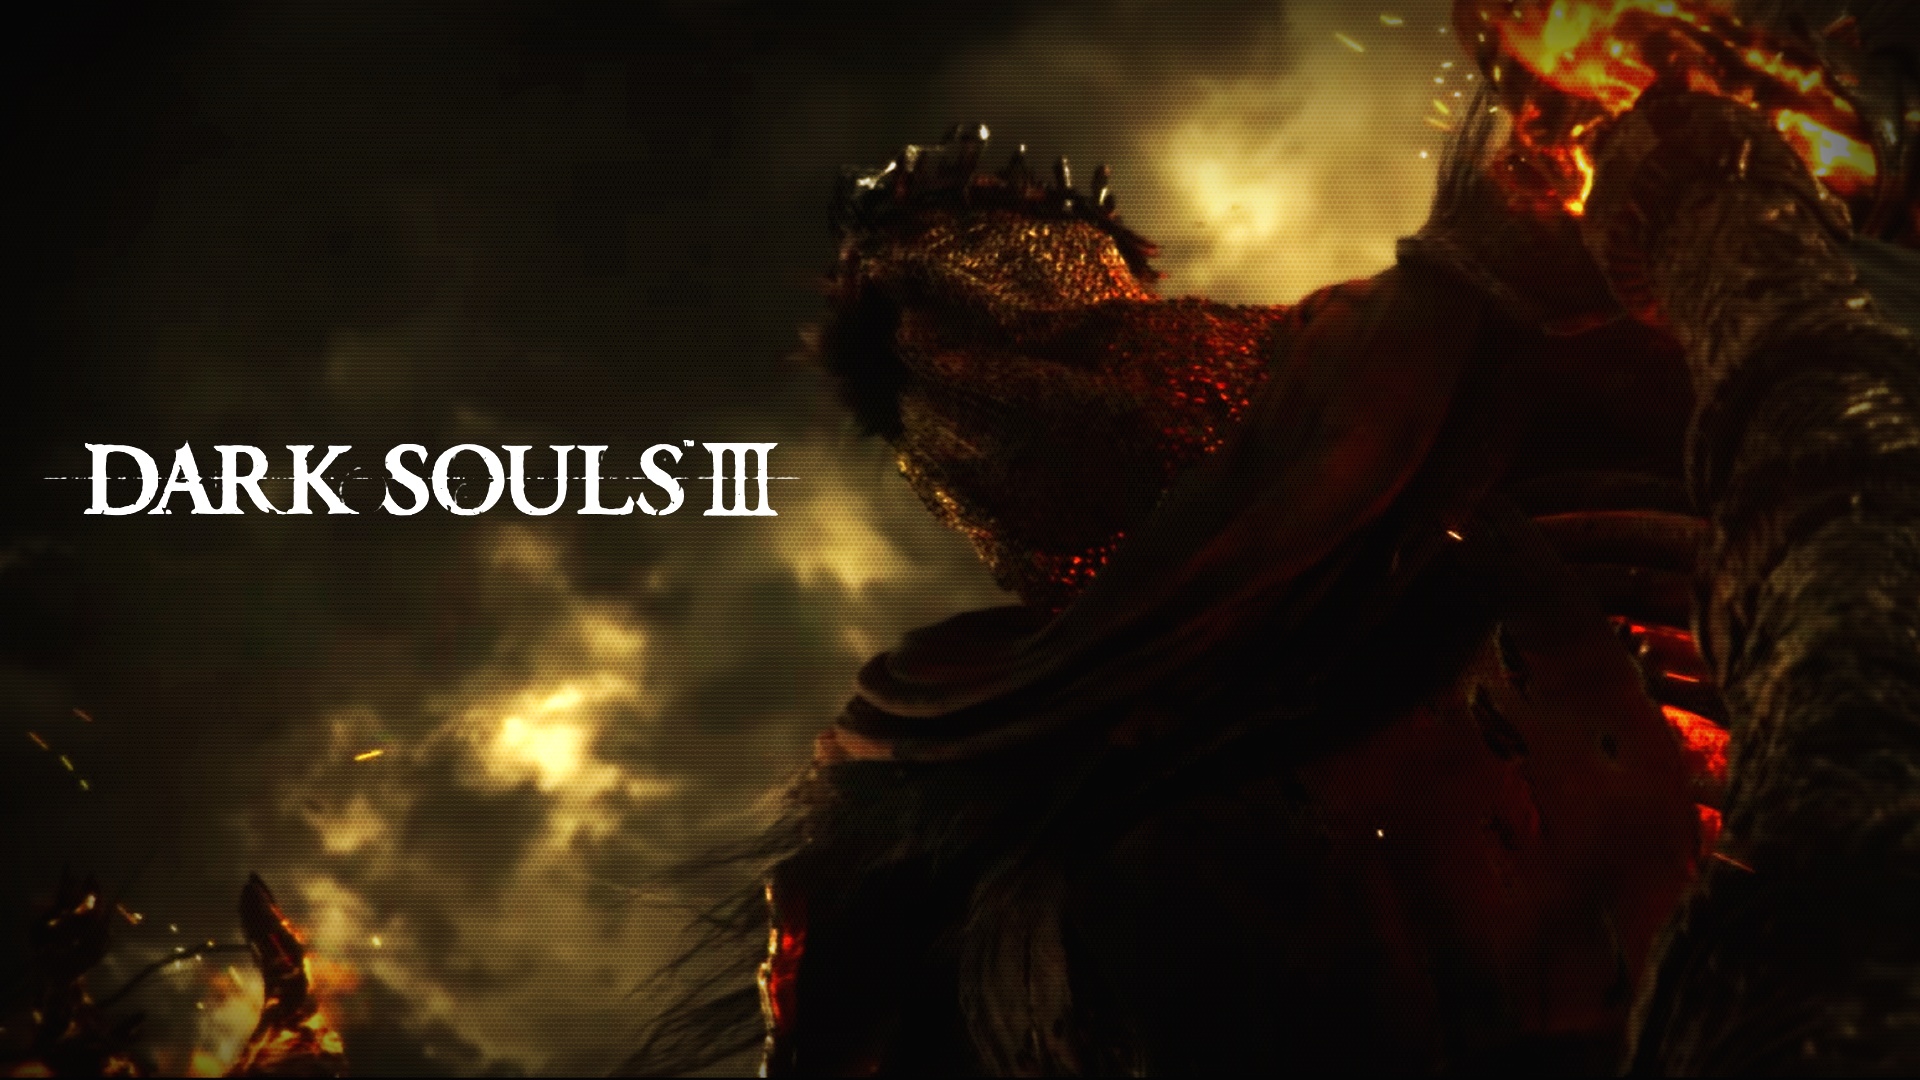  Dark Souls III & The Witcher 3 Wild Hunt Compilation